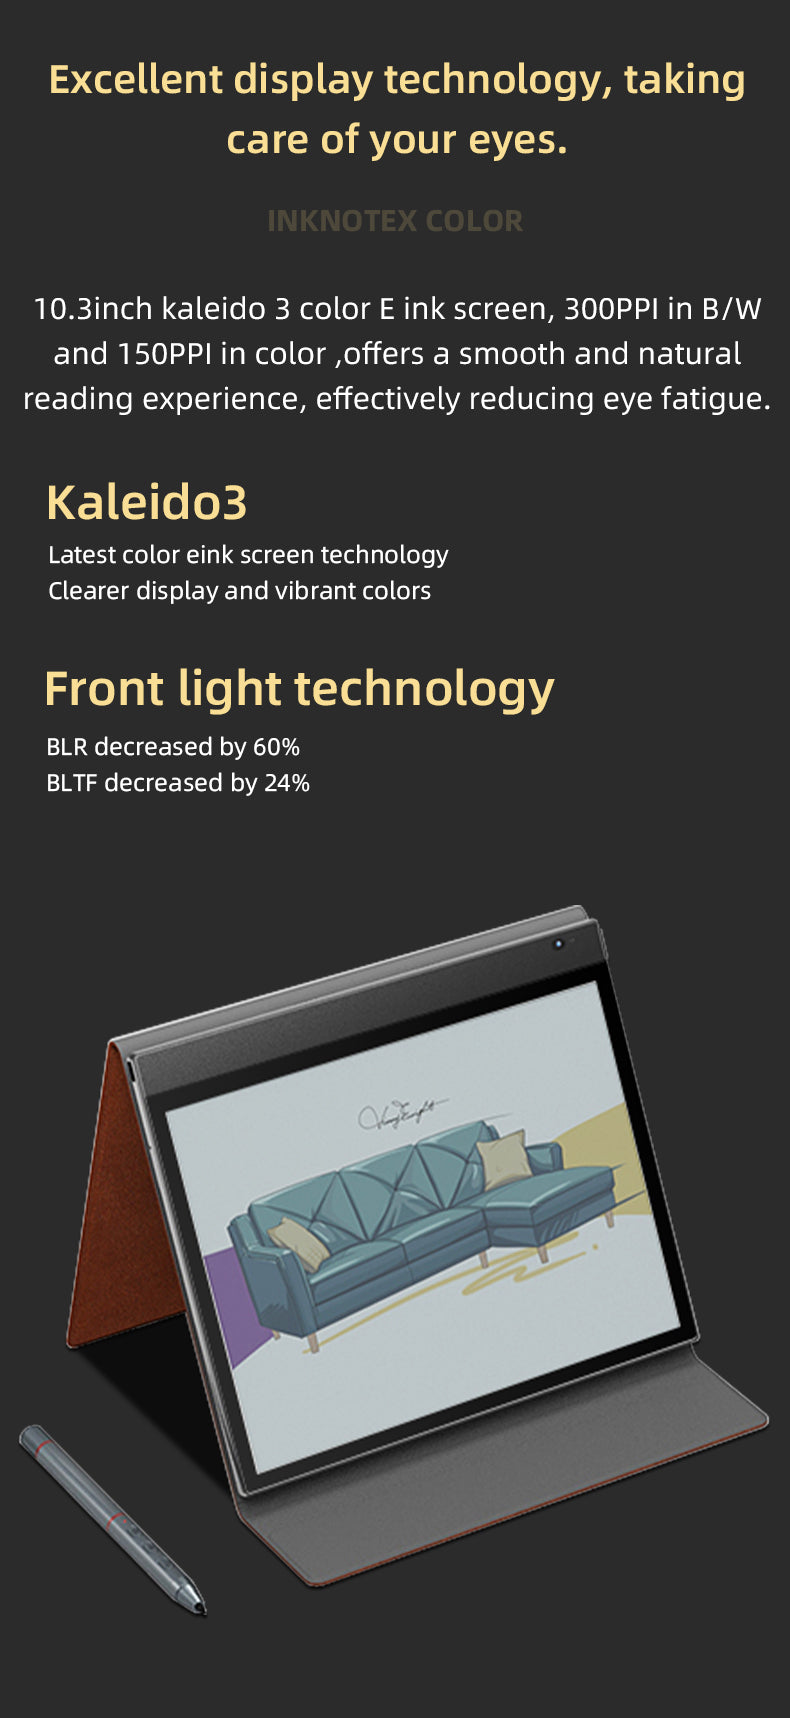 Kaleido 3 display